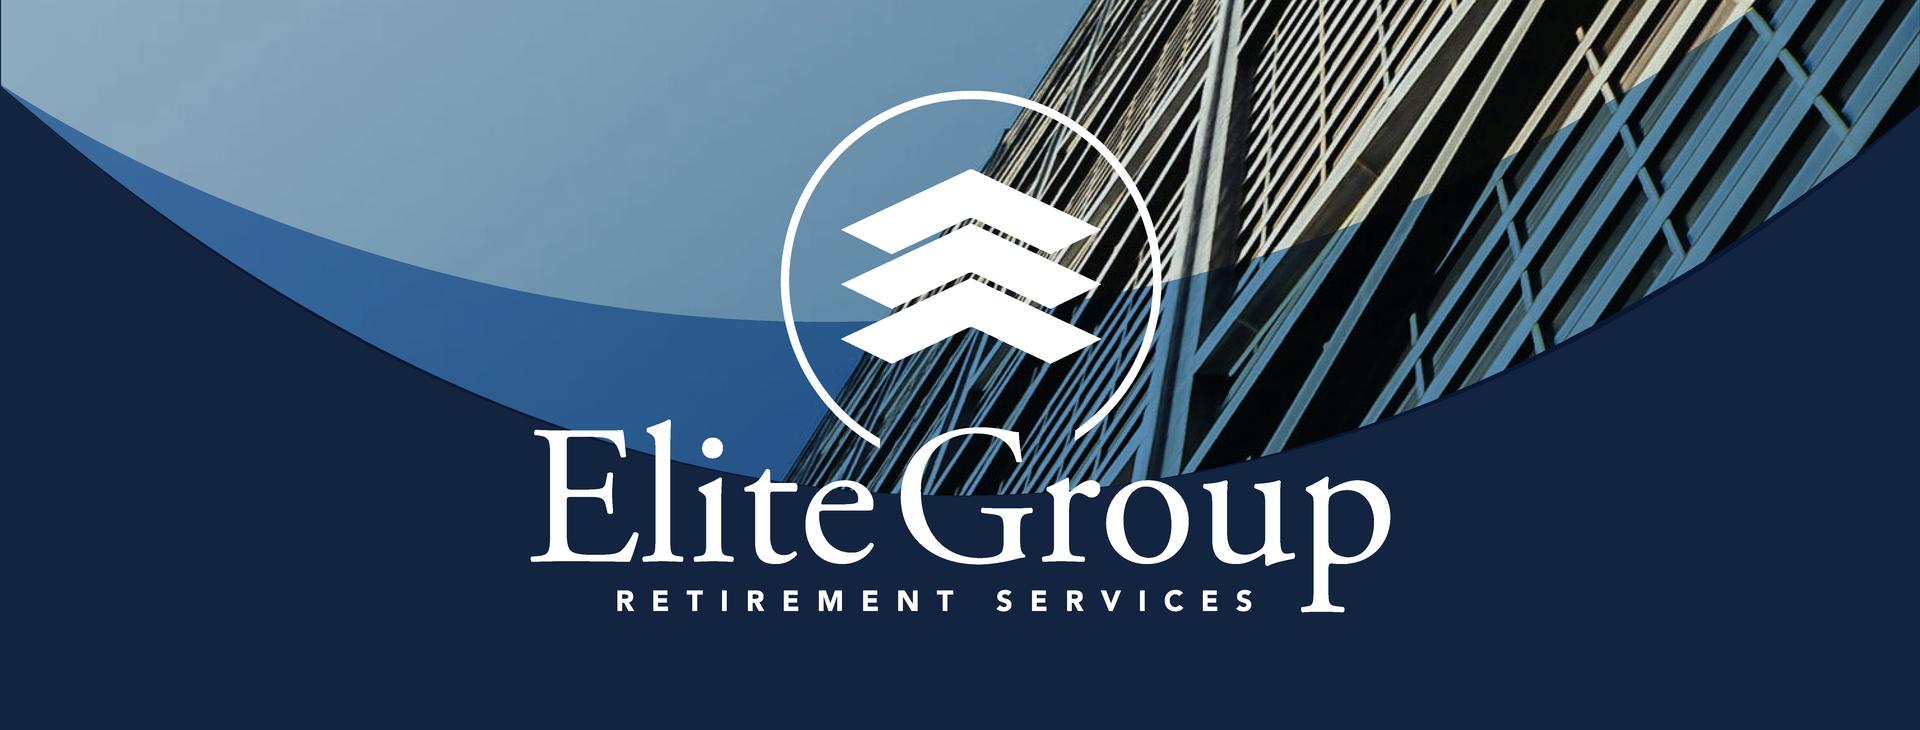 Elite Group Retirement Services